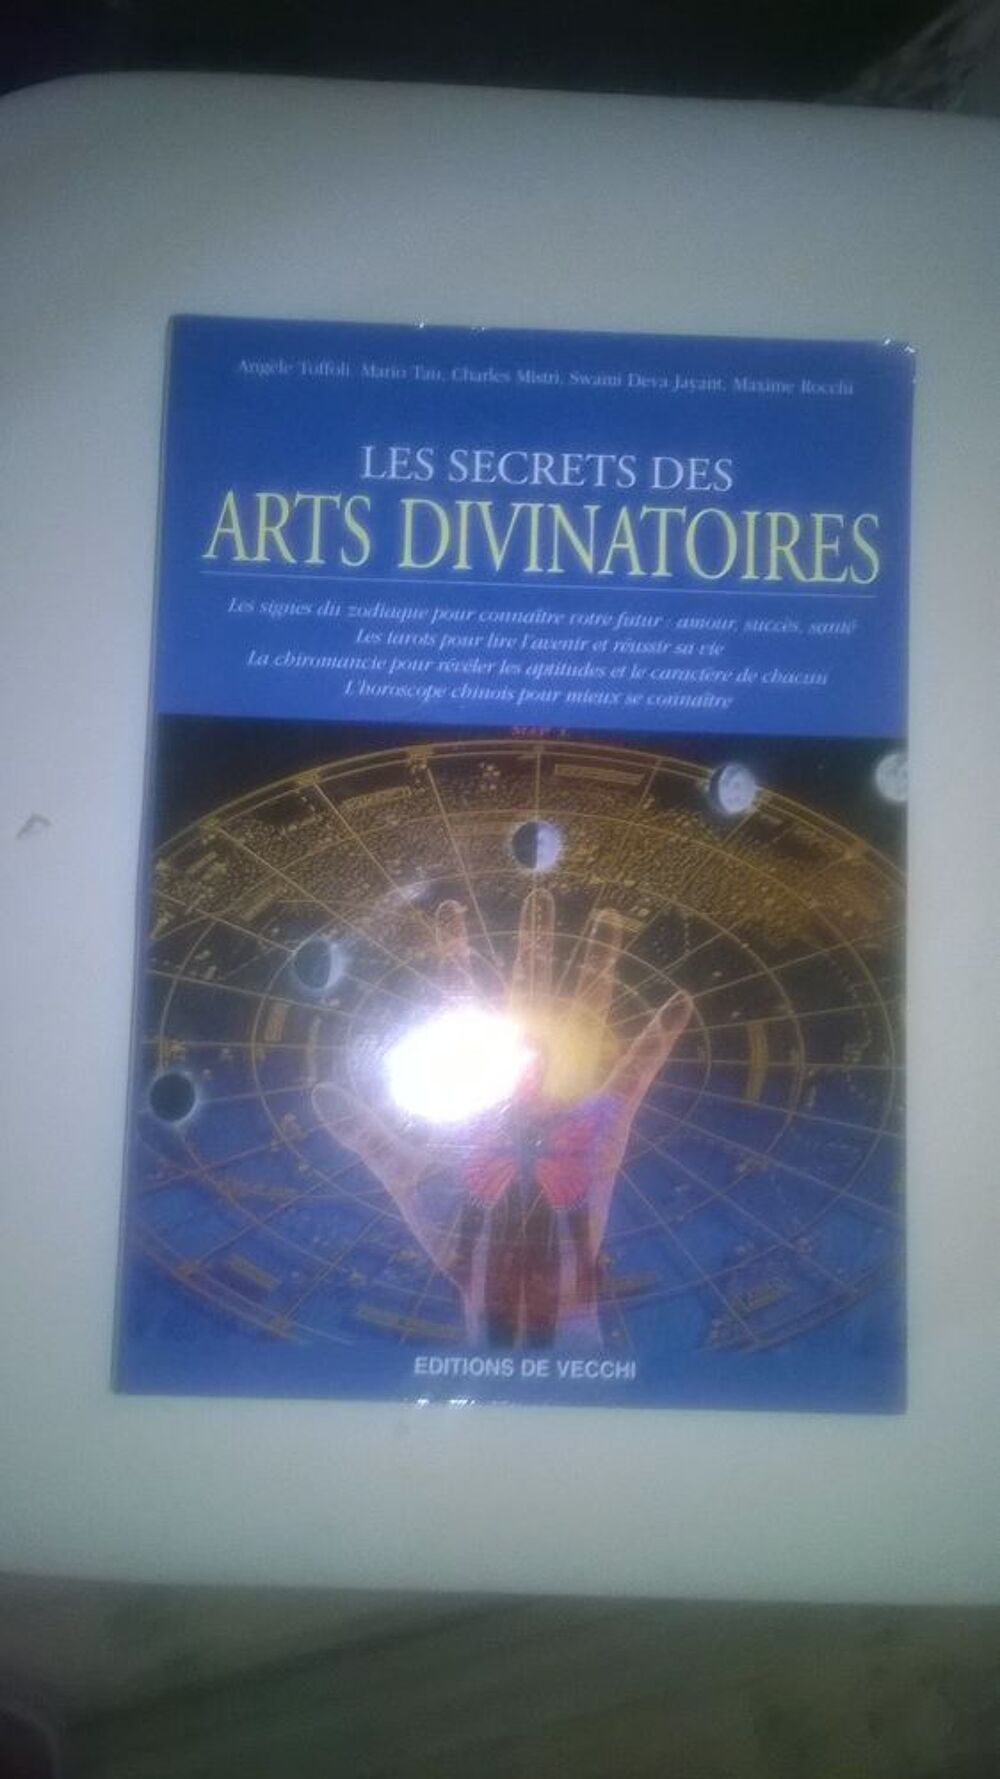 Les secrets des arts divinatoires
NEUF
Broch&eacute;: 374 pages
Livres et BD